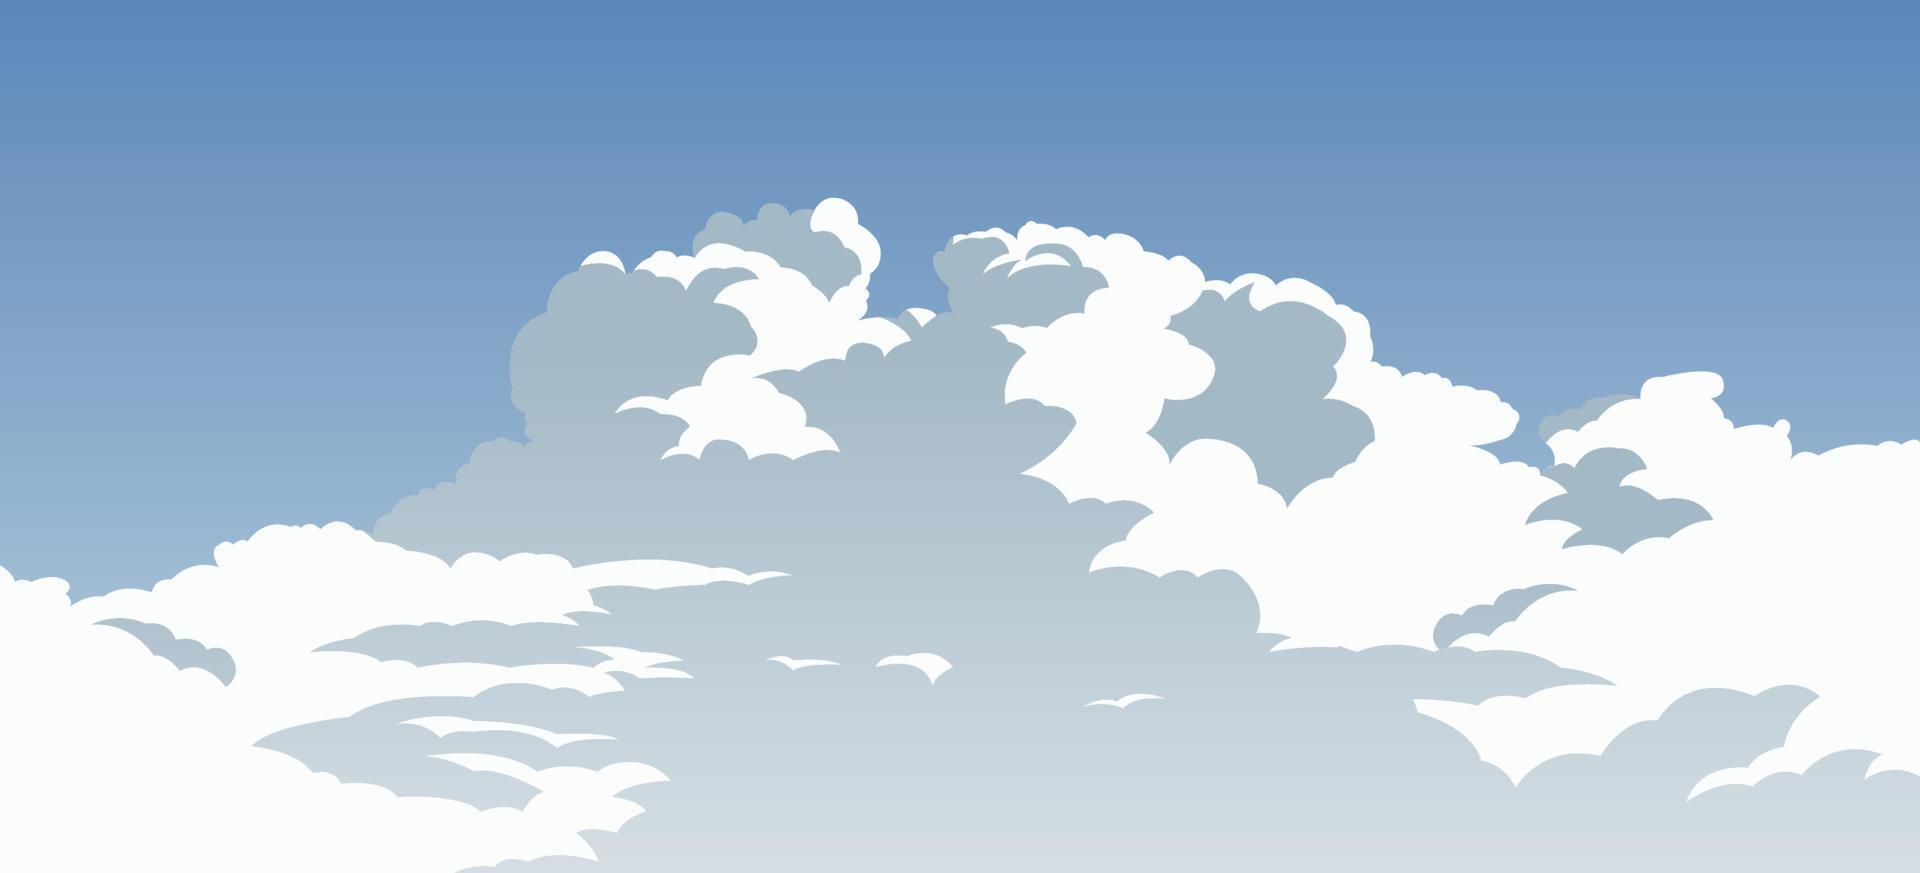 versão de desenho animado do lindo céu azul nublado vetor